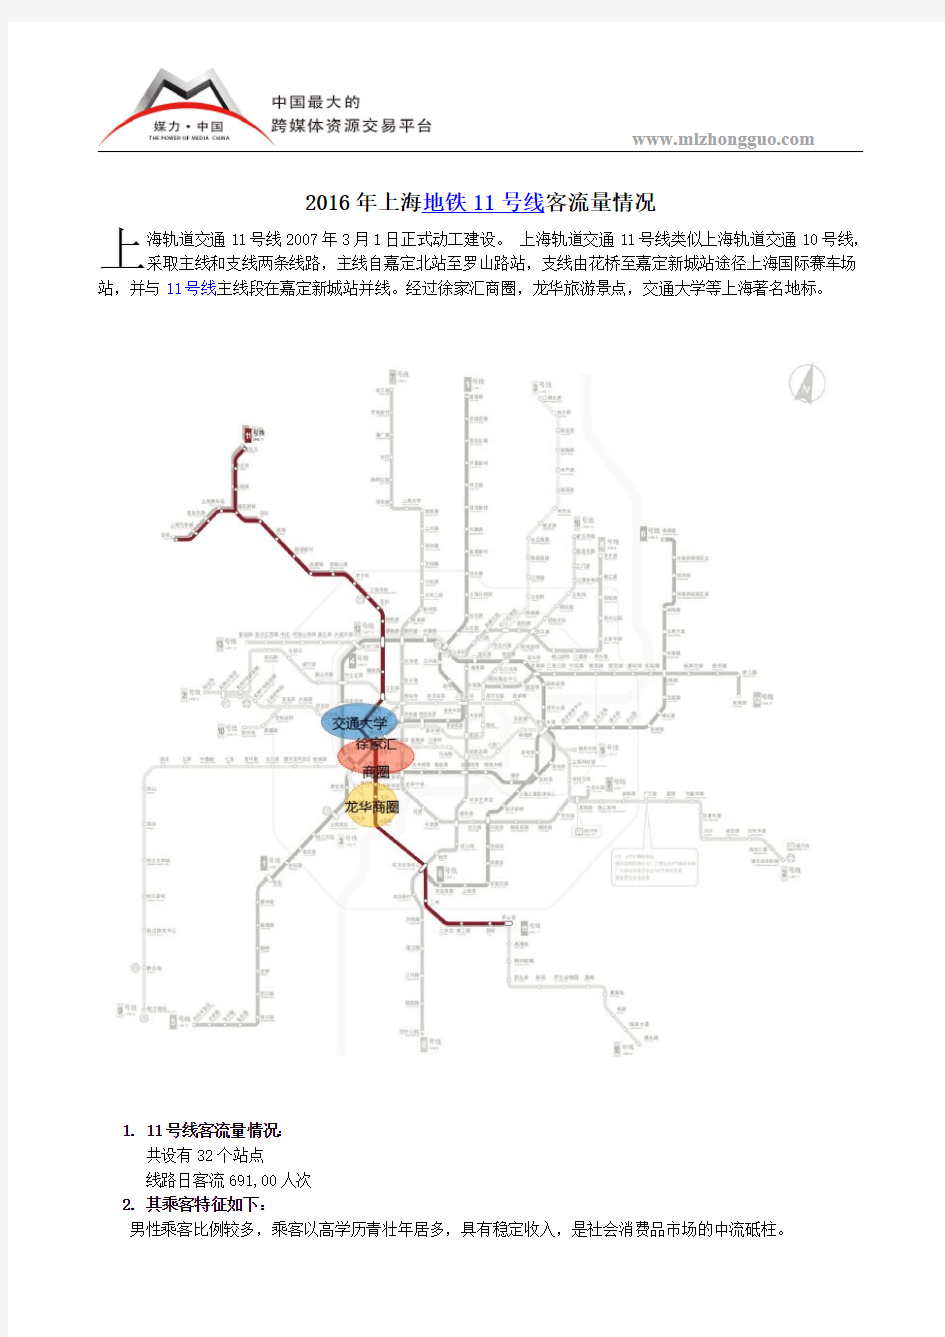 2016年上海地铁11号线客流量情况